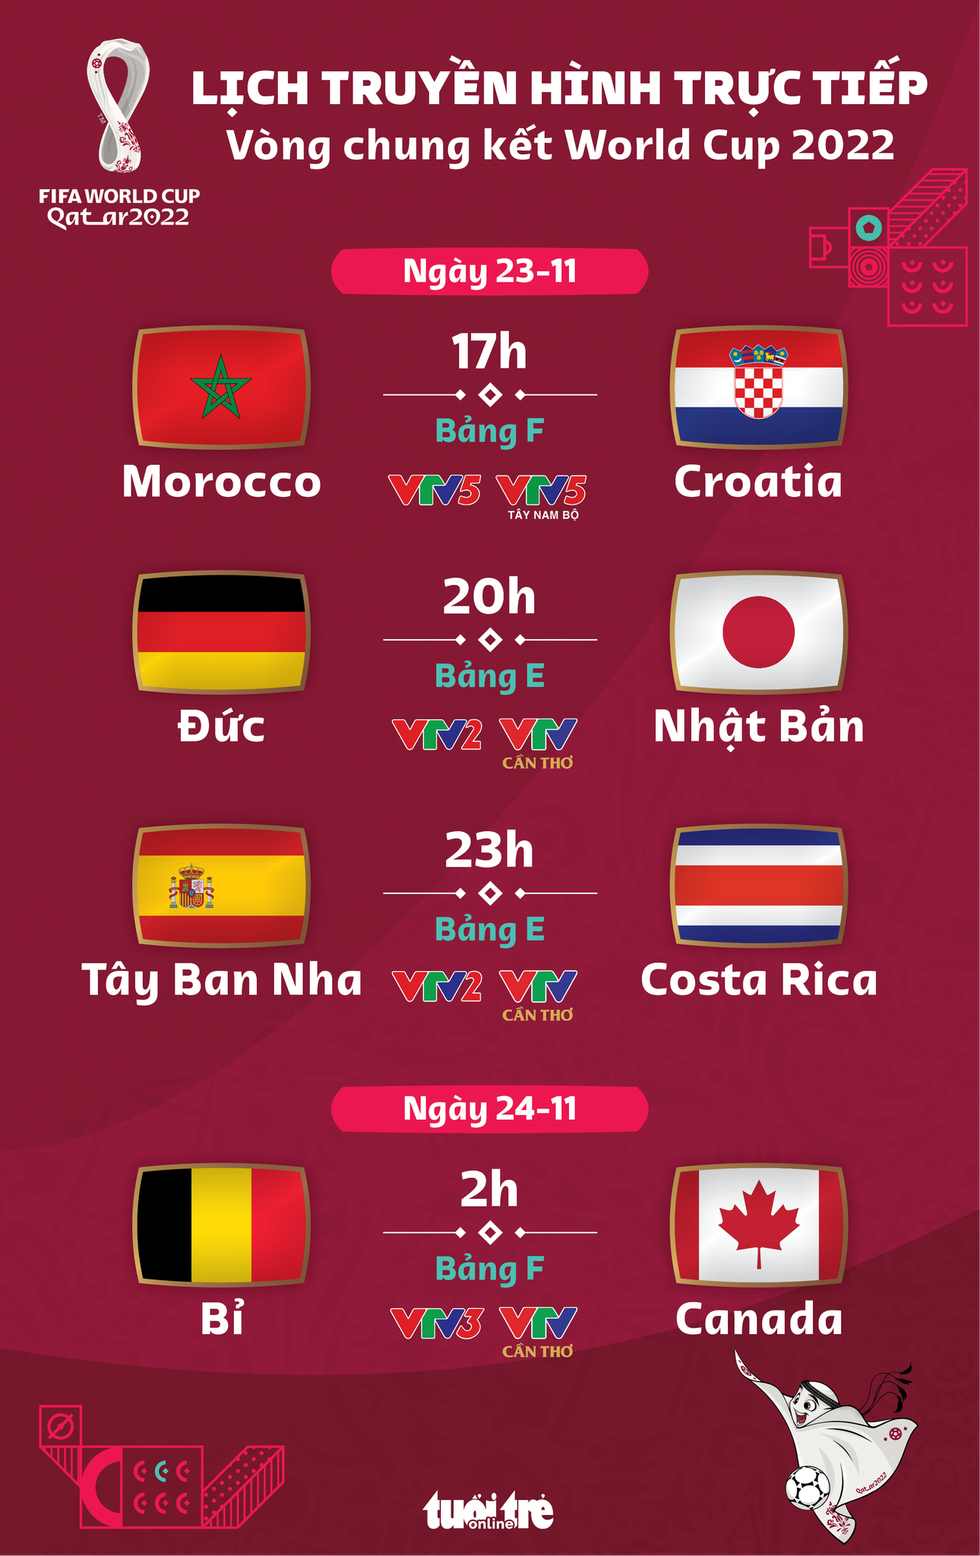 Lịch trực tiếp World Cup 2022 hôm nay 23-11: Đức - Nhật Bản, Tây Ban Nha - Costa Rica - Ảnh 1.